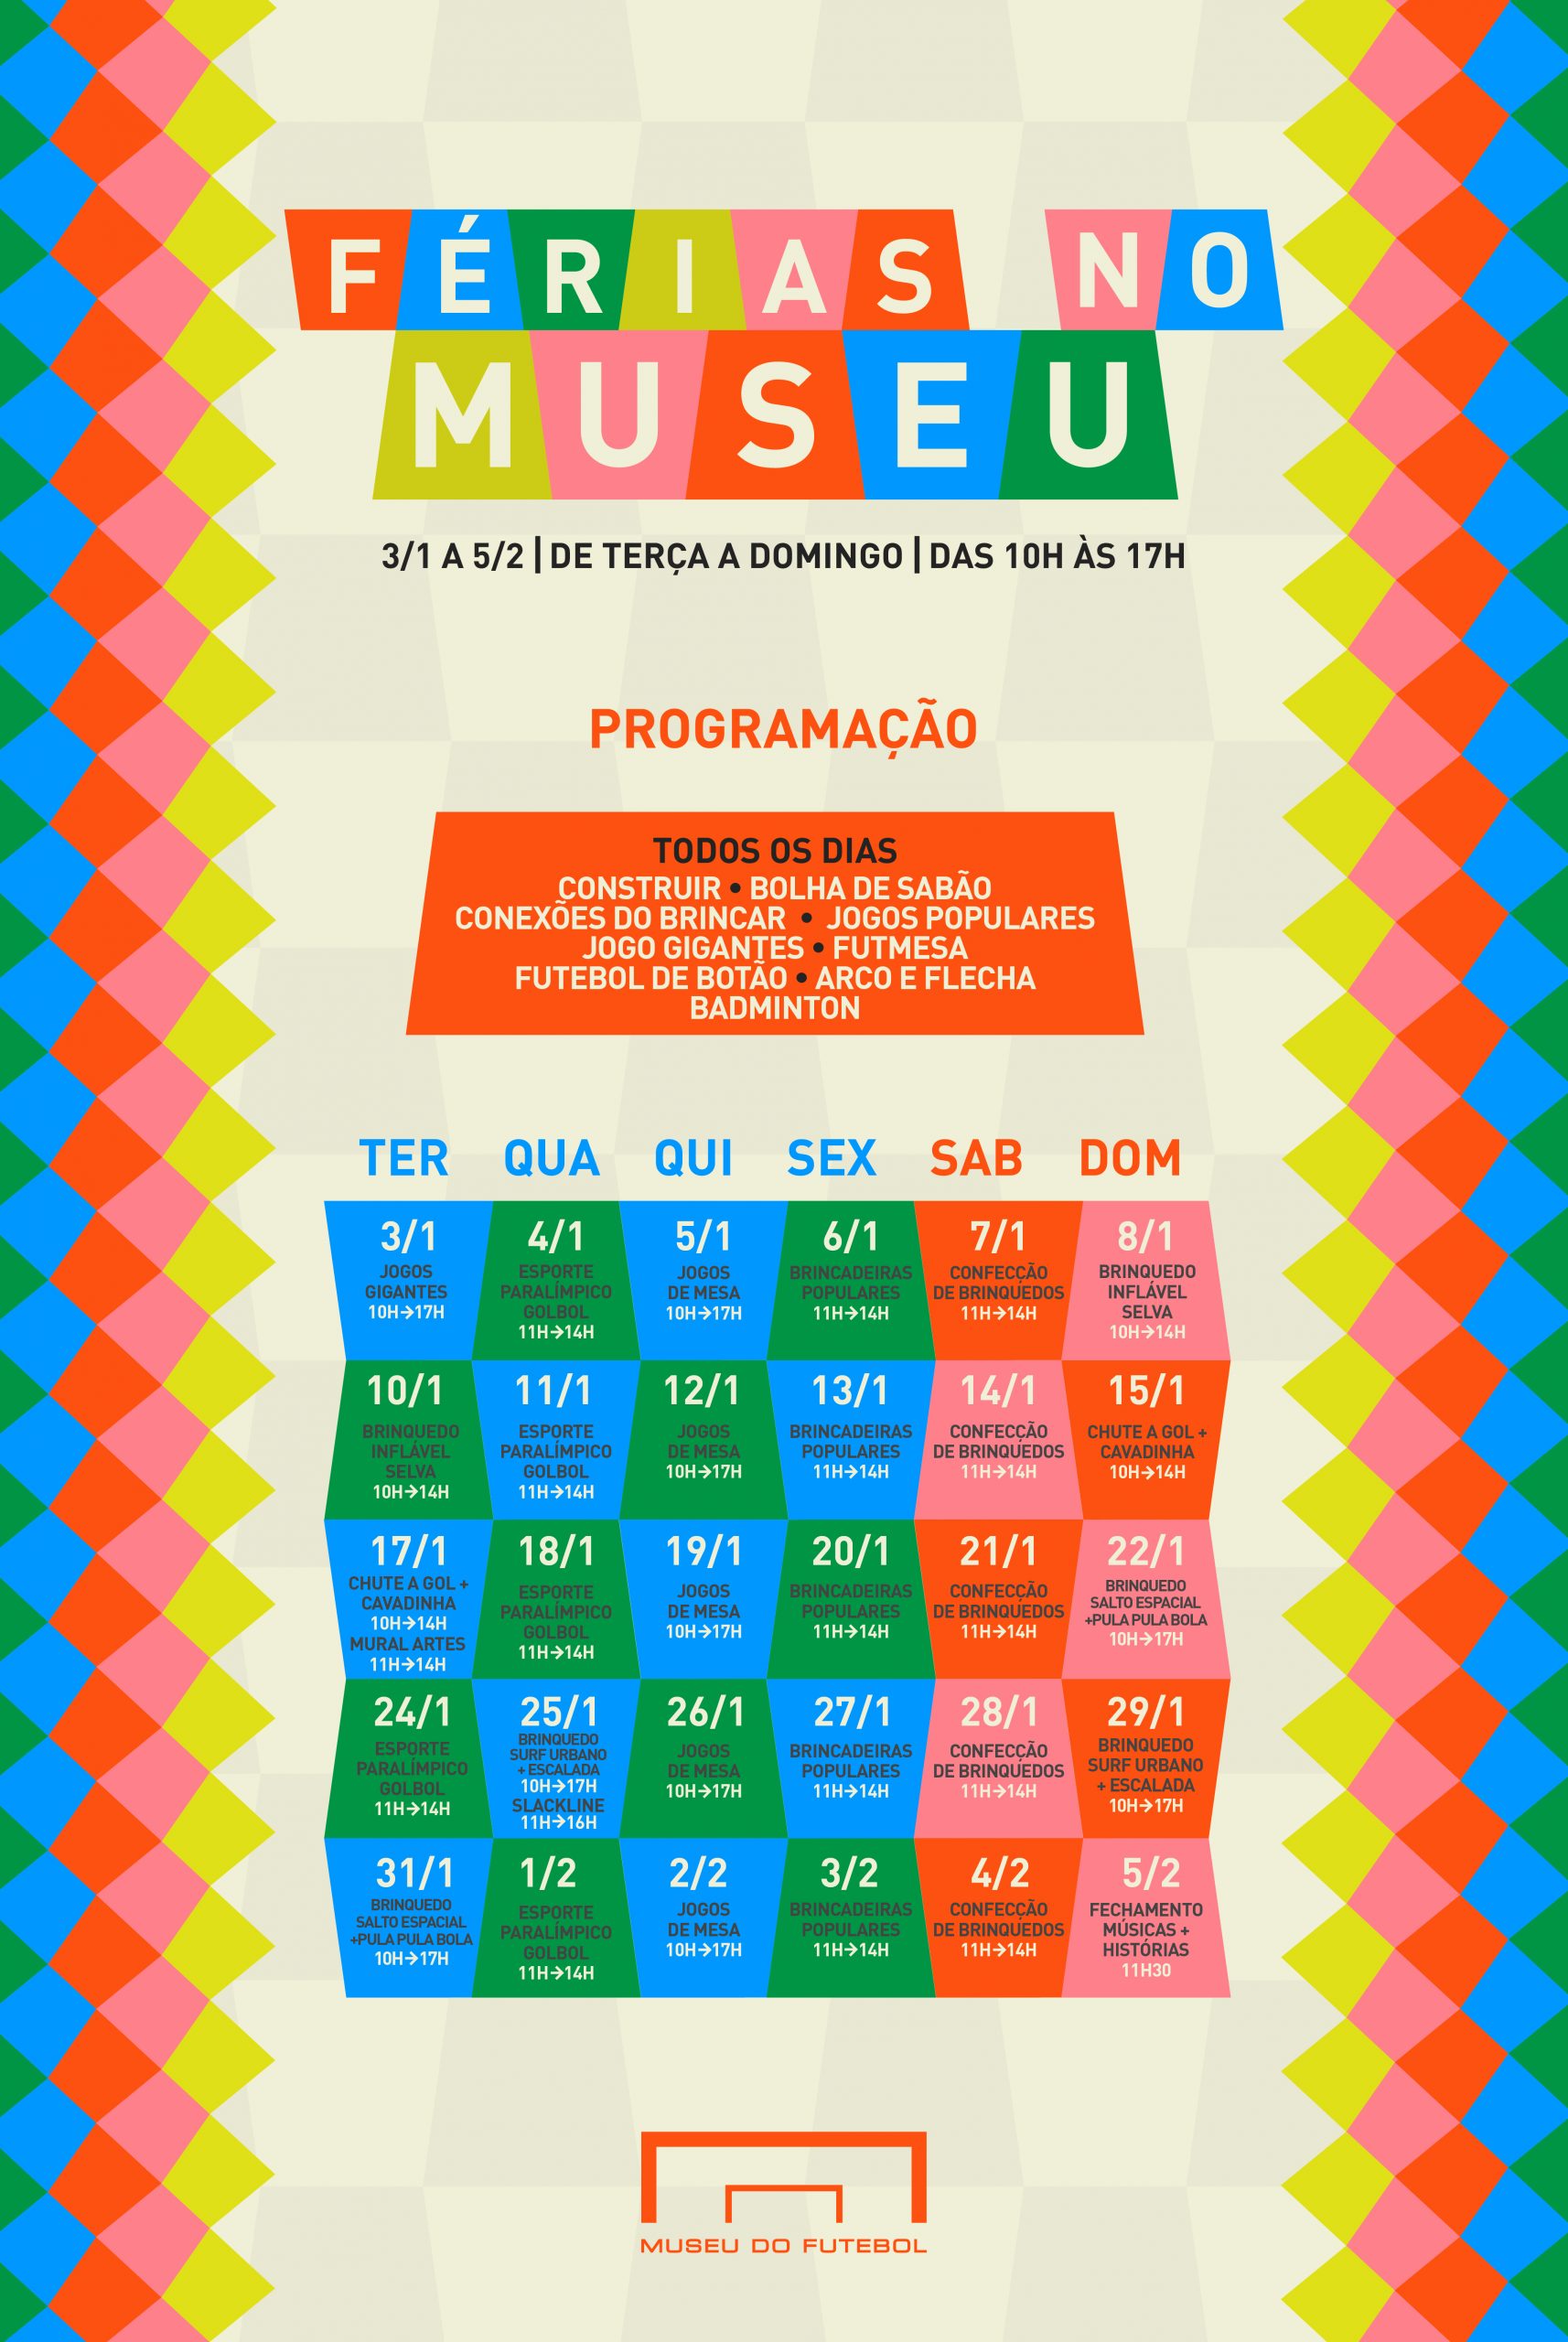 Calendário com fundo bege e colorido, com informações sobre o projeto Férias no Museu